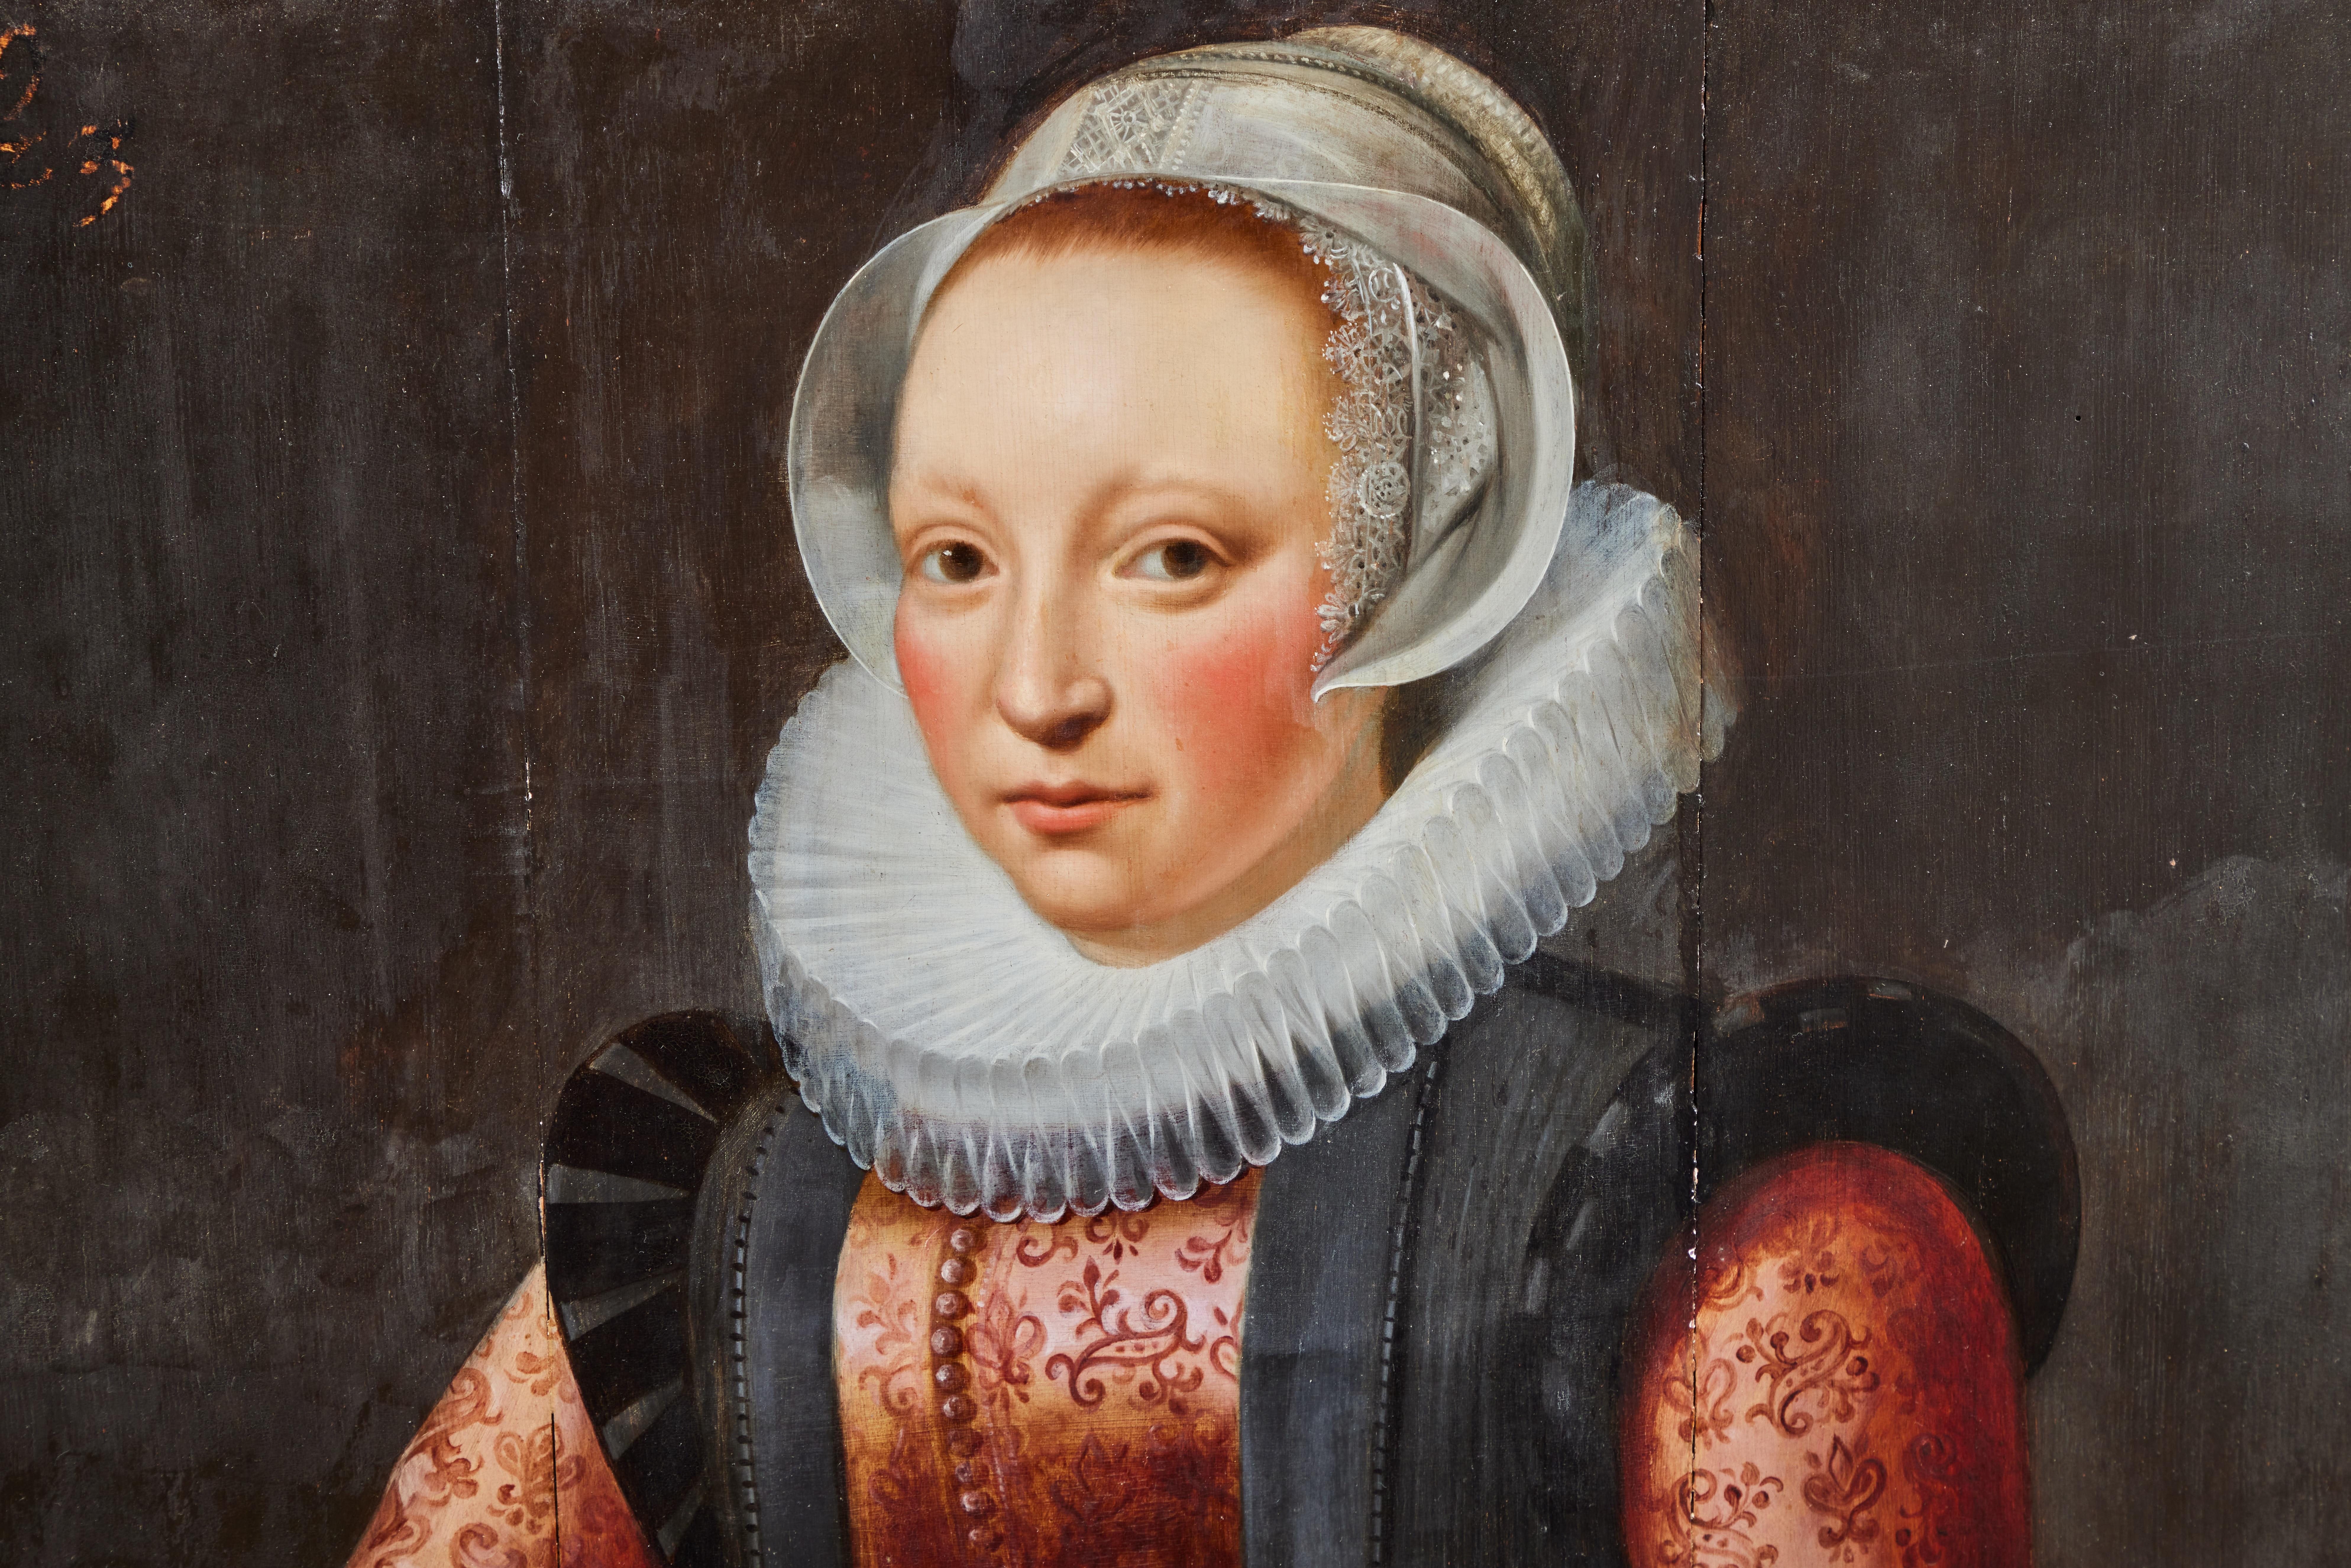 Ein wunderschön gemaltes Öl-auf-Pappe-Porträt einer Dame im Barockstil, die ein besticktes Oberteil mit gerafftem Kragen trägt. Ihre Haube ist mit zarter Spitze eingefasst.
Datiert 1619 auf der Vorderseite des Gemäldes oben links. Der